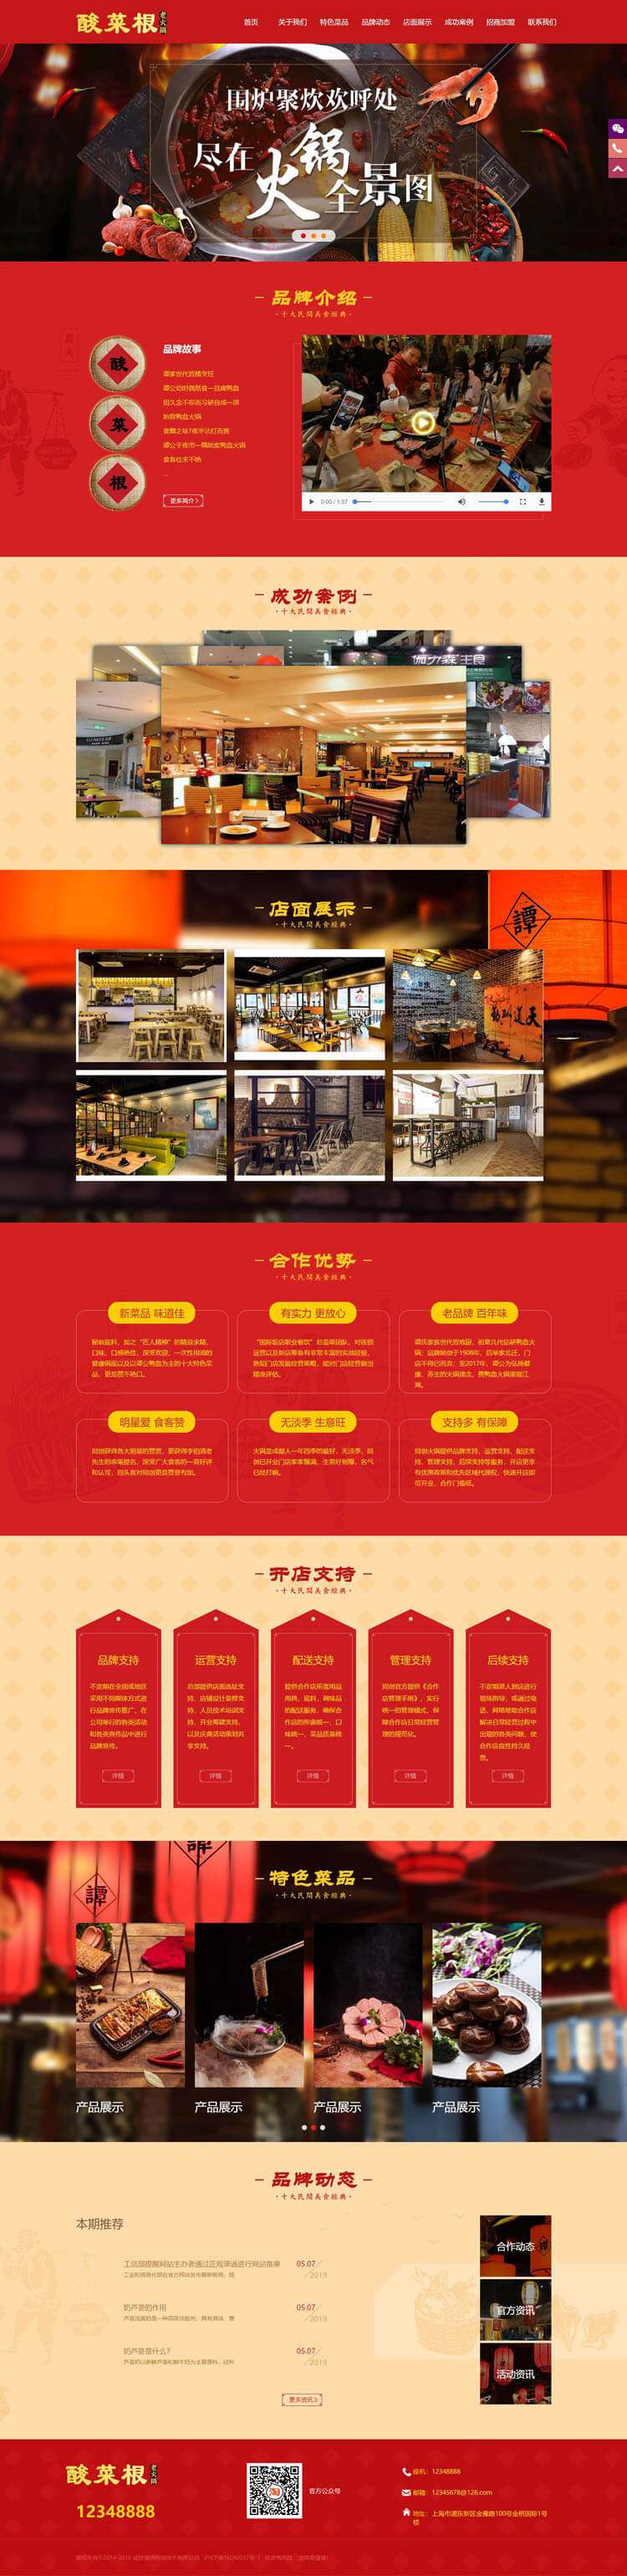 餐饮管理企业网站源码程序-TC020-2